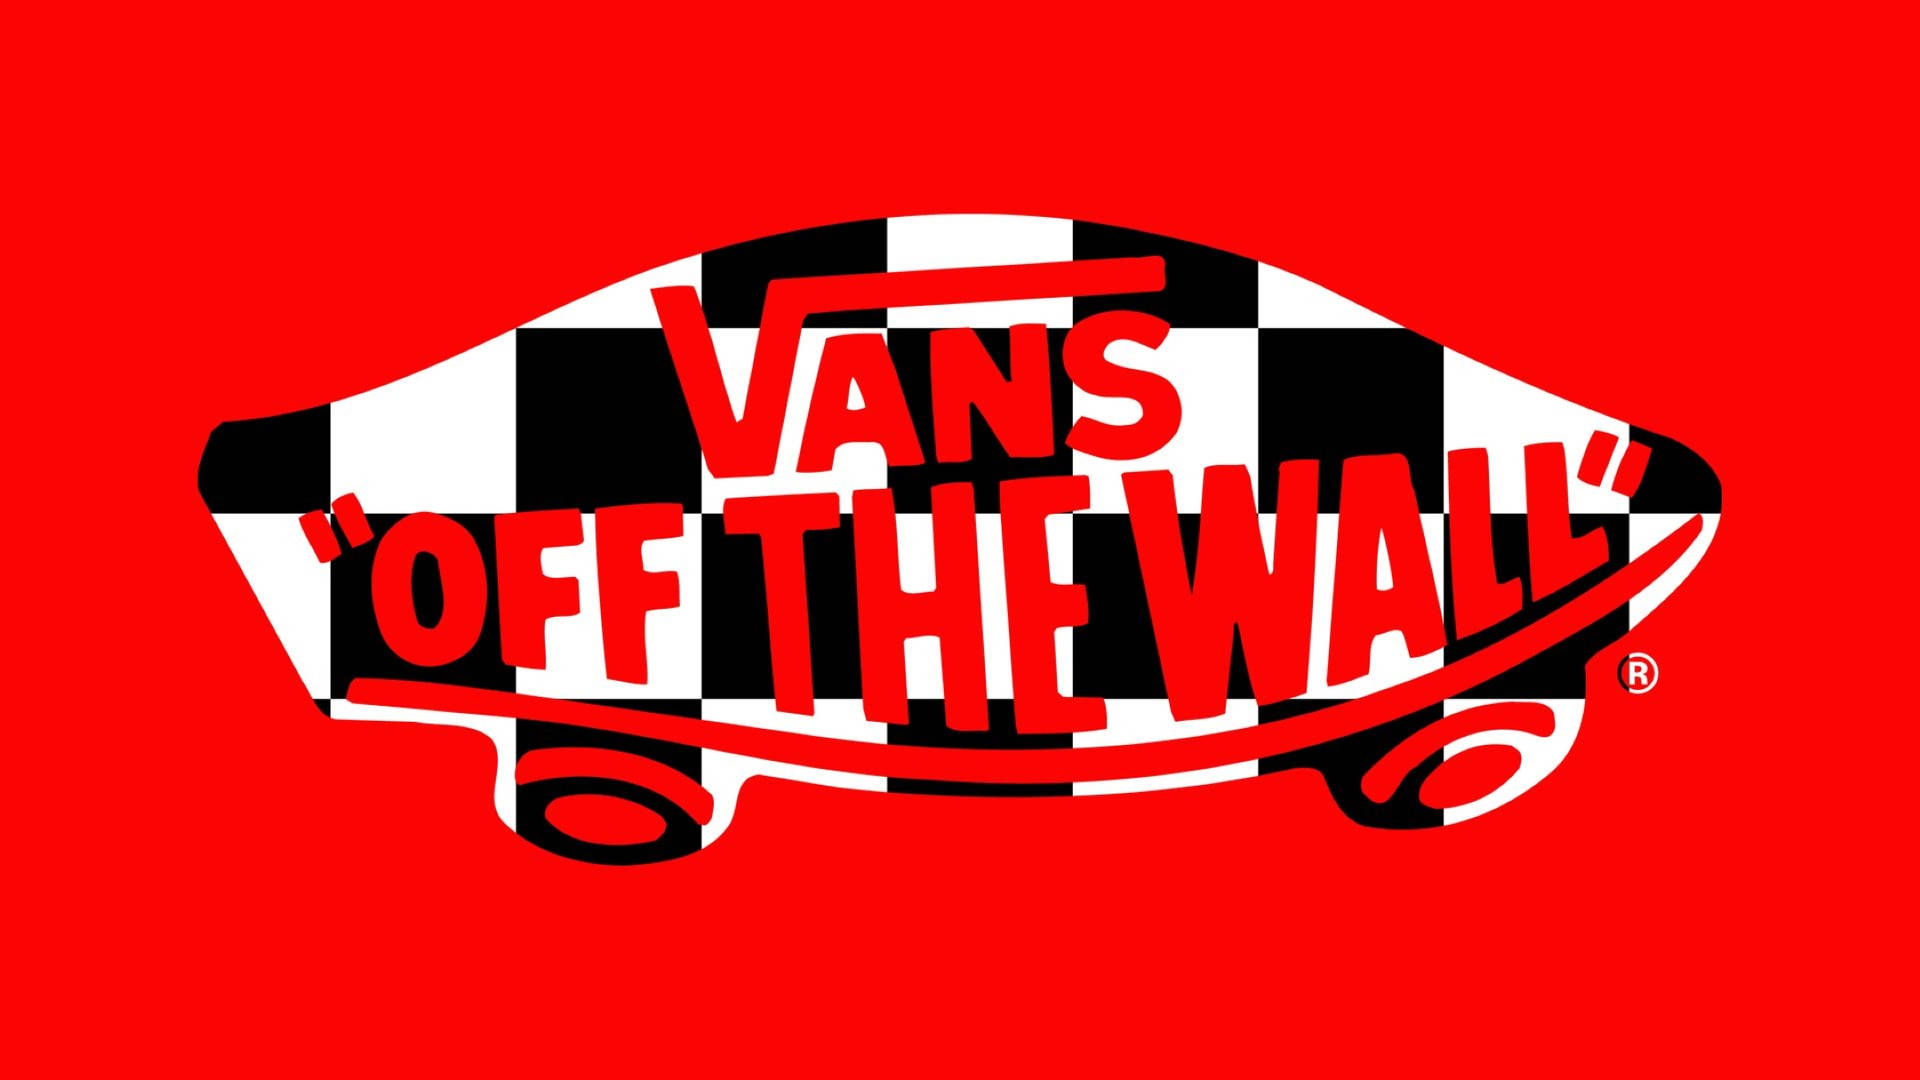 Roteskariertes Vans-logo Wallpaper